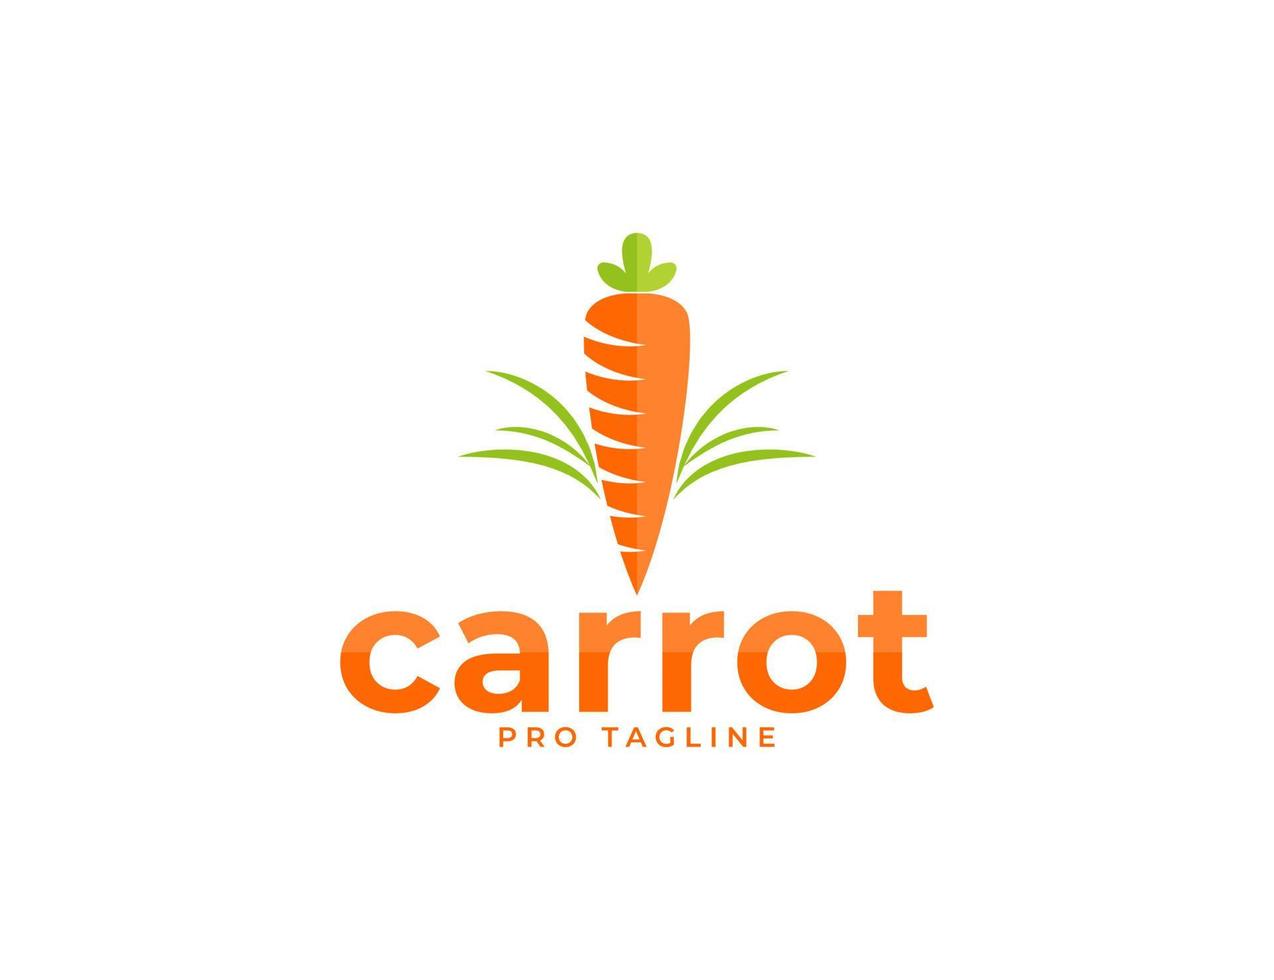 Fresh orange carrot vegetable logo illustration vector